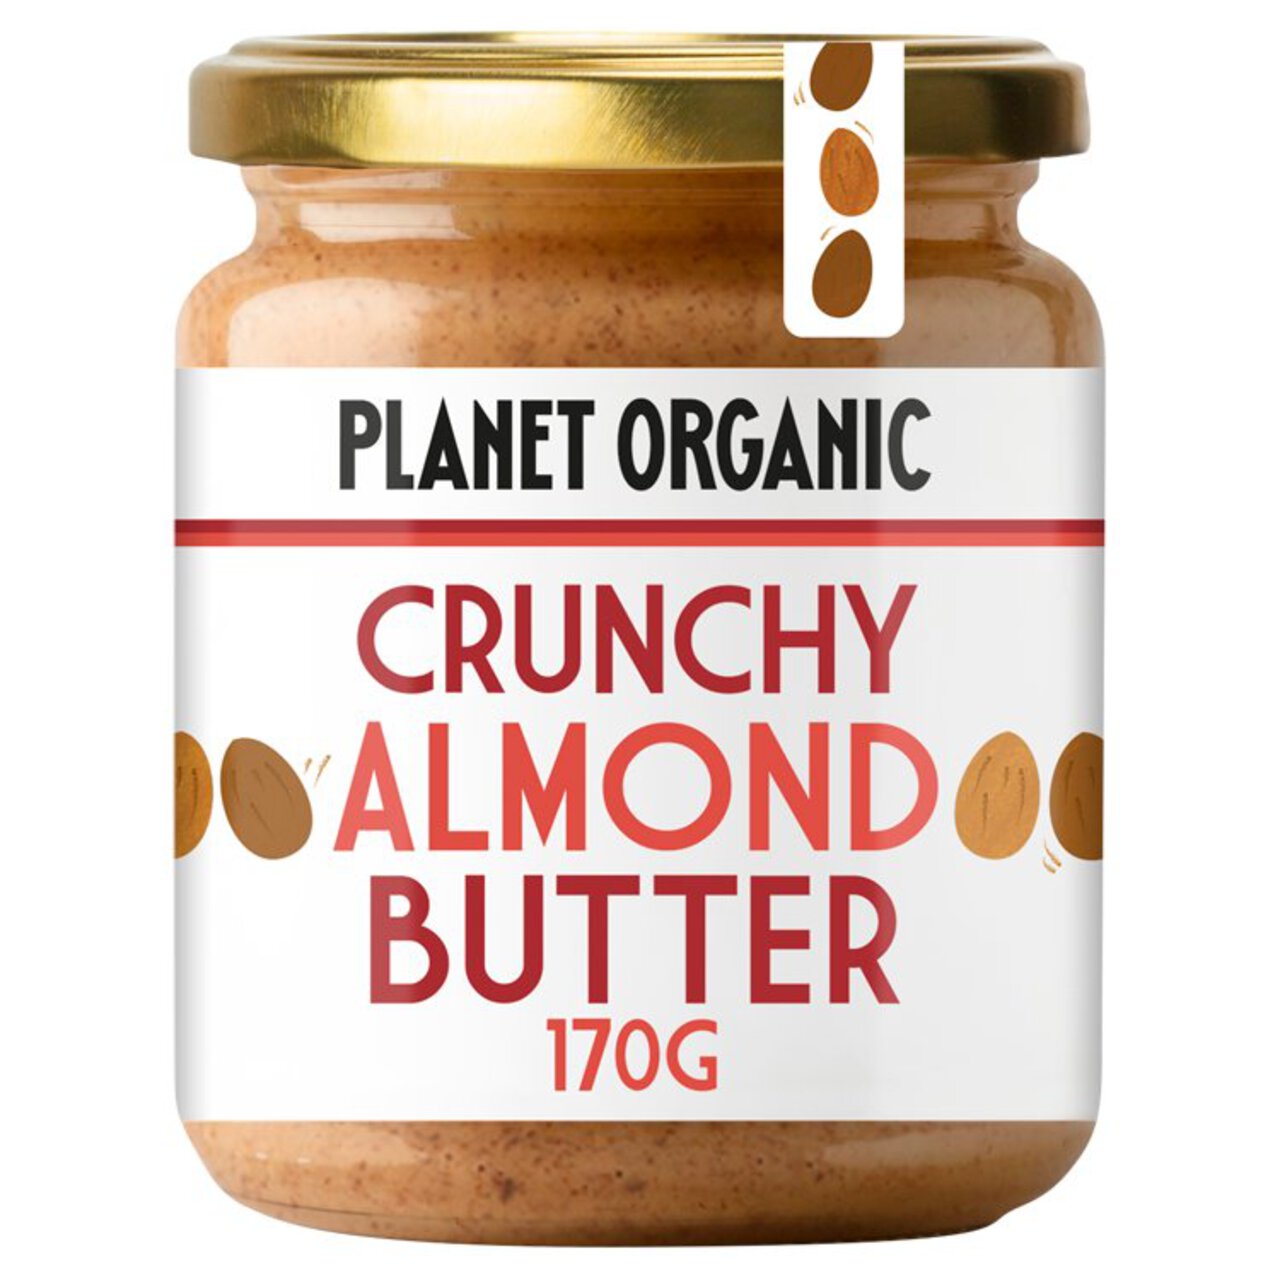 Planet Organic Crunchy Almond Butter 170g